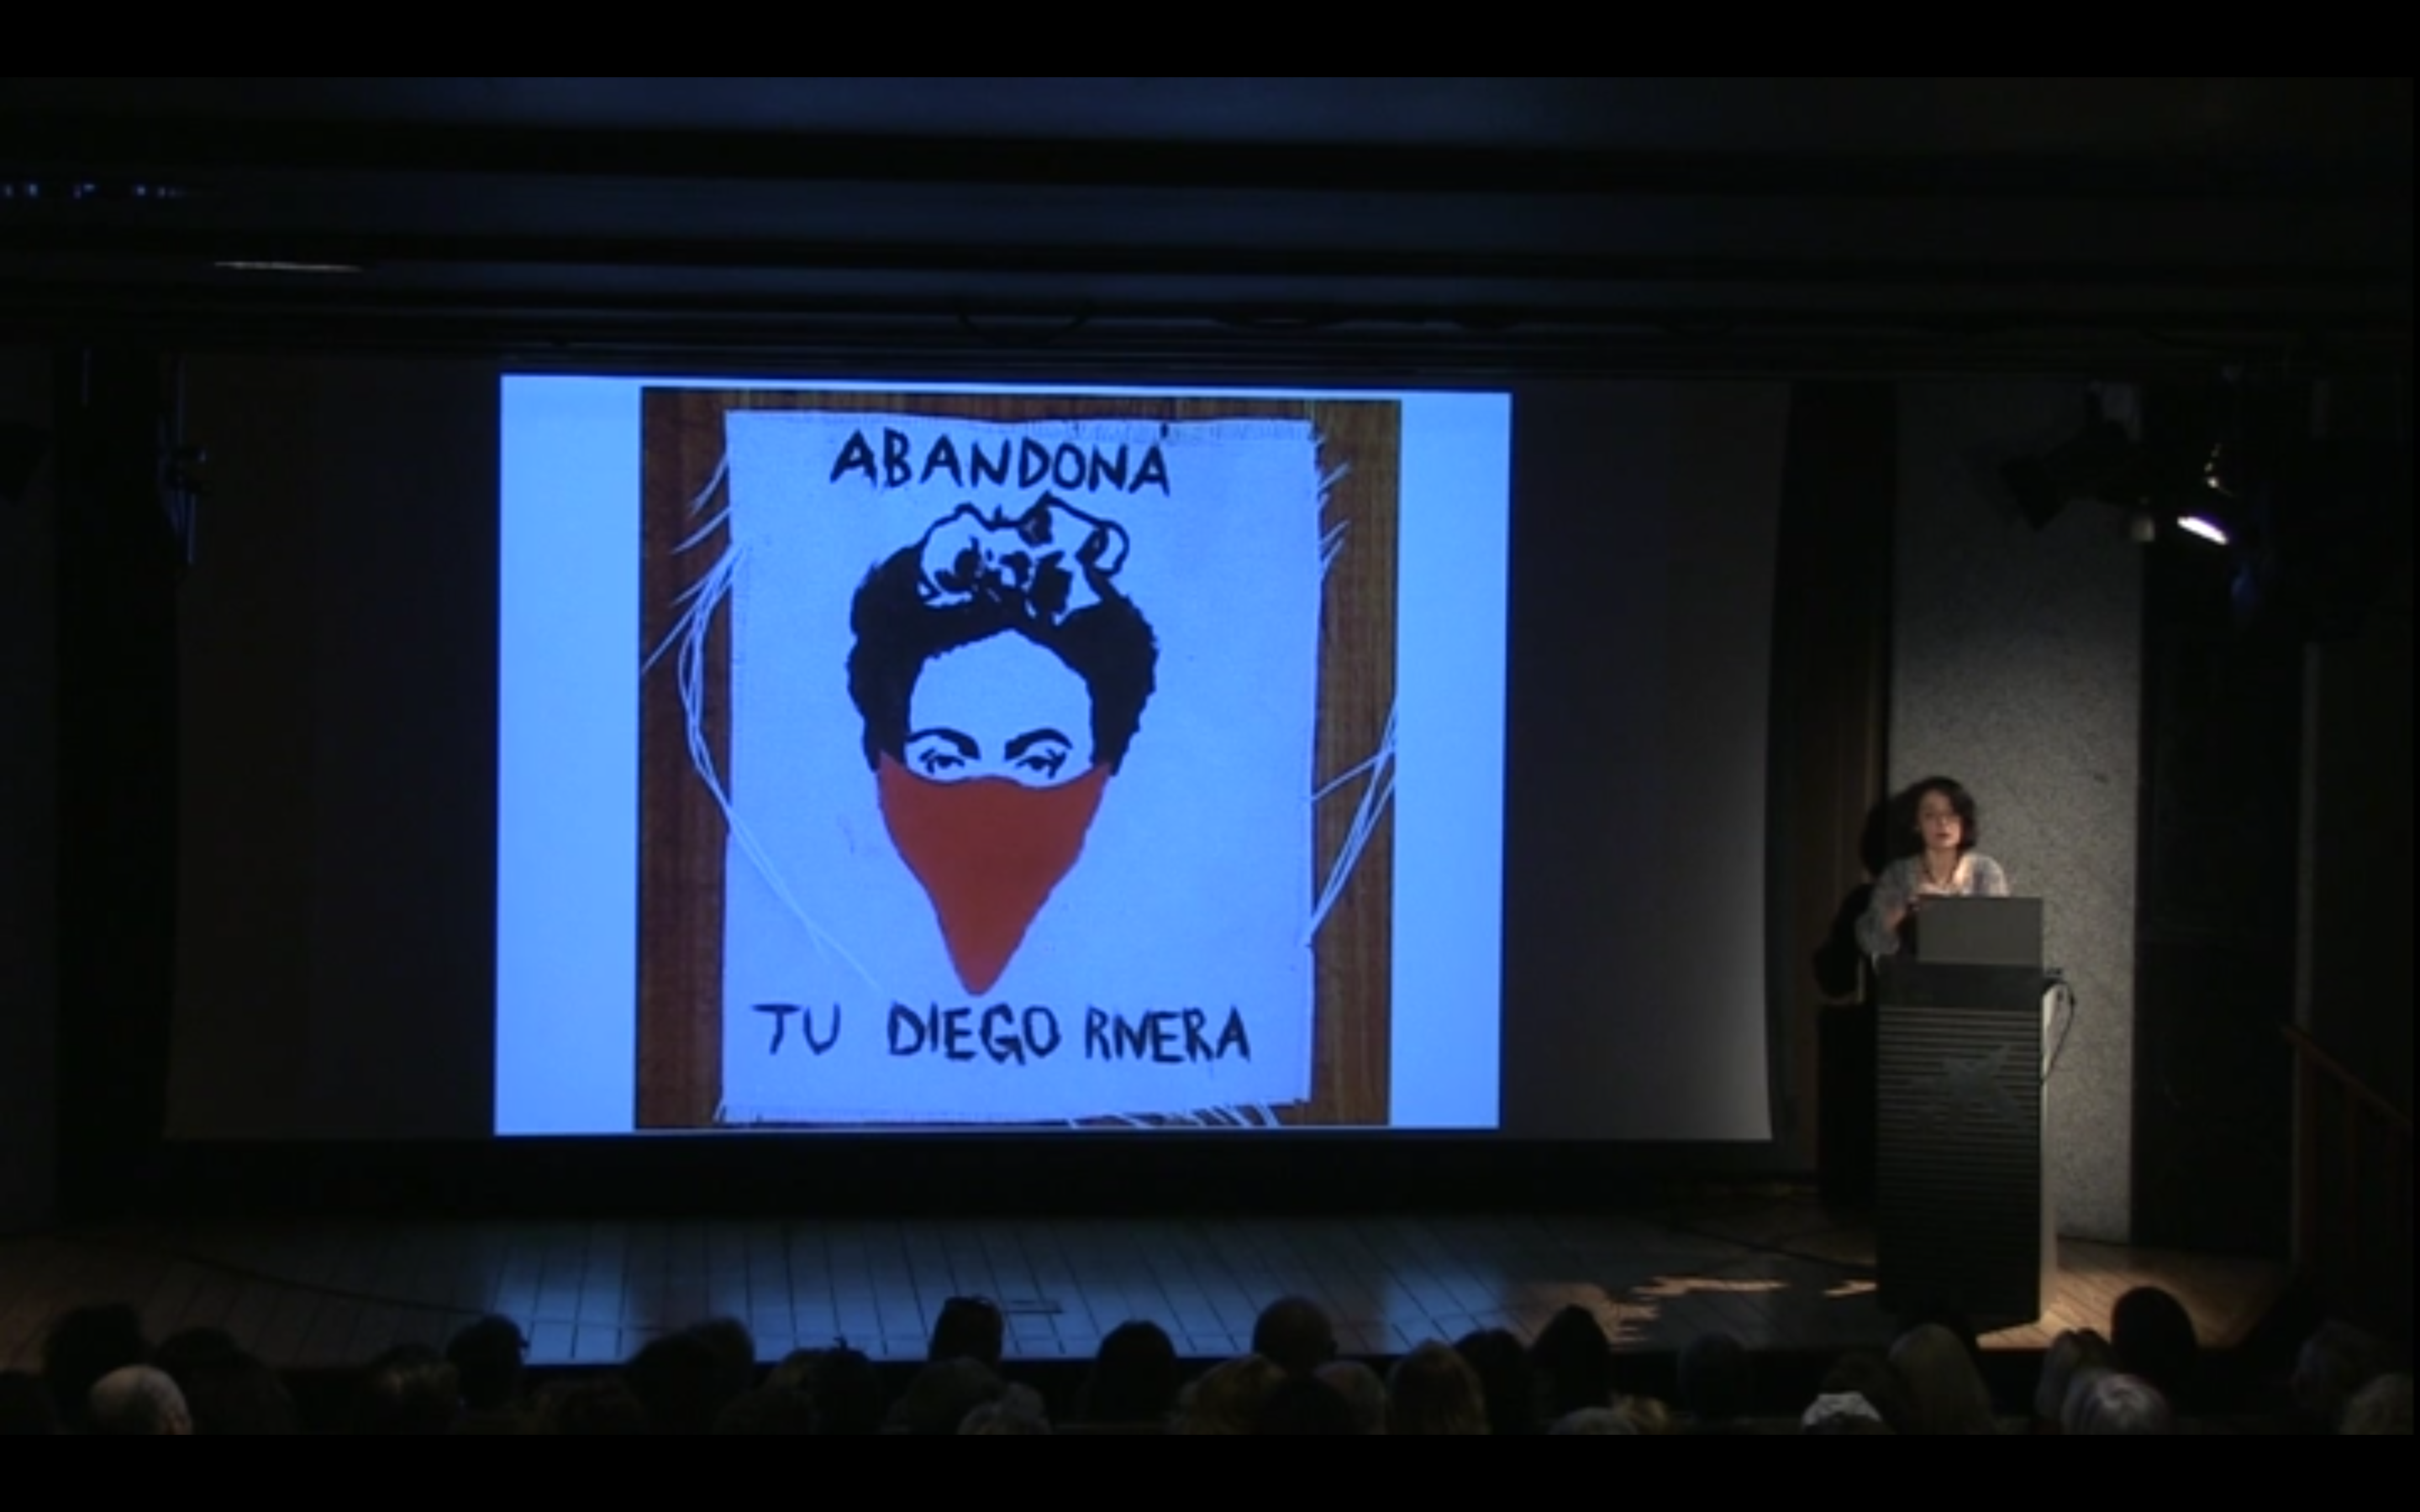 conferencia sobre Frida Kahlo y Diego Rivera de Marián López Fdz. Cao en CaixaForum Palma de Mallorca